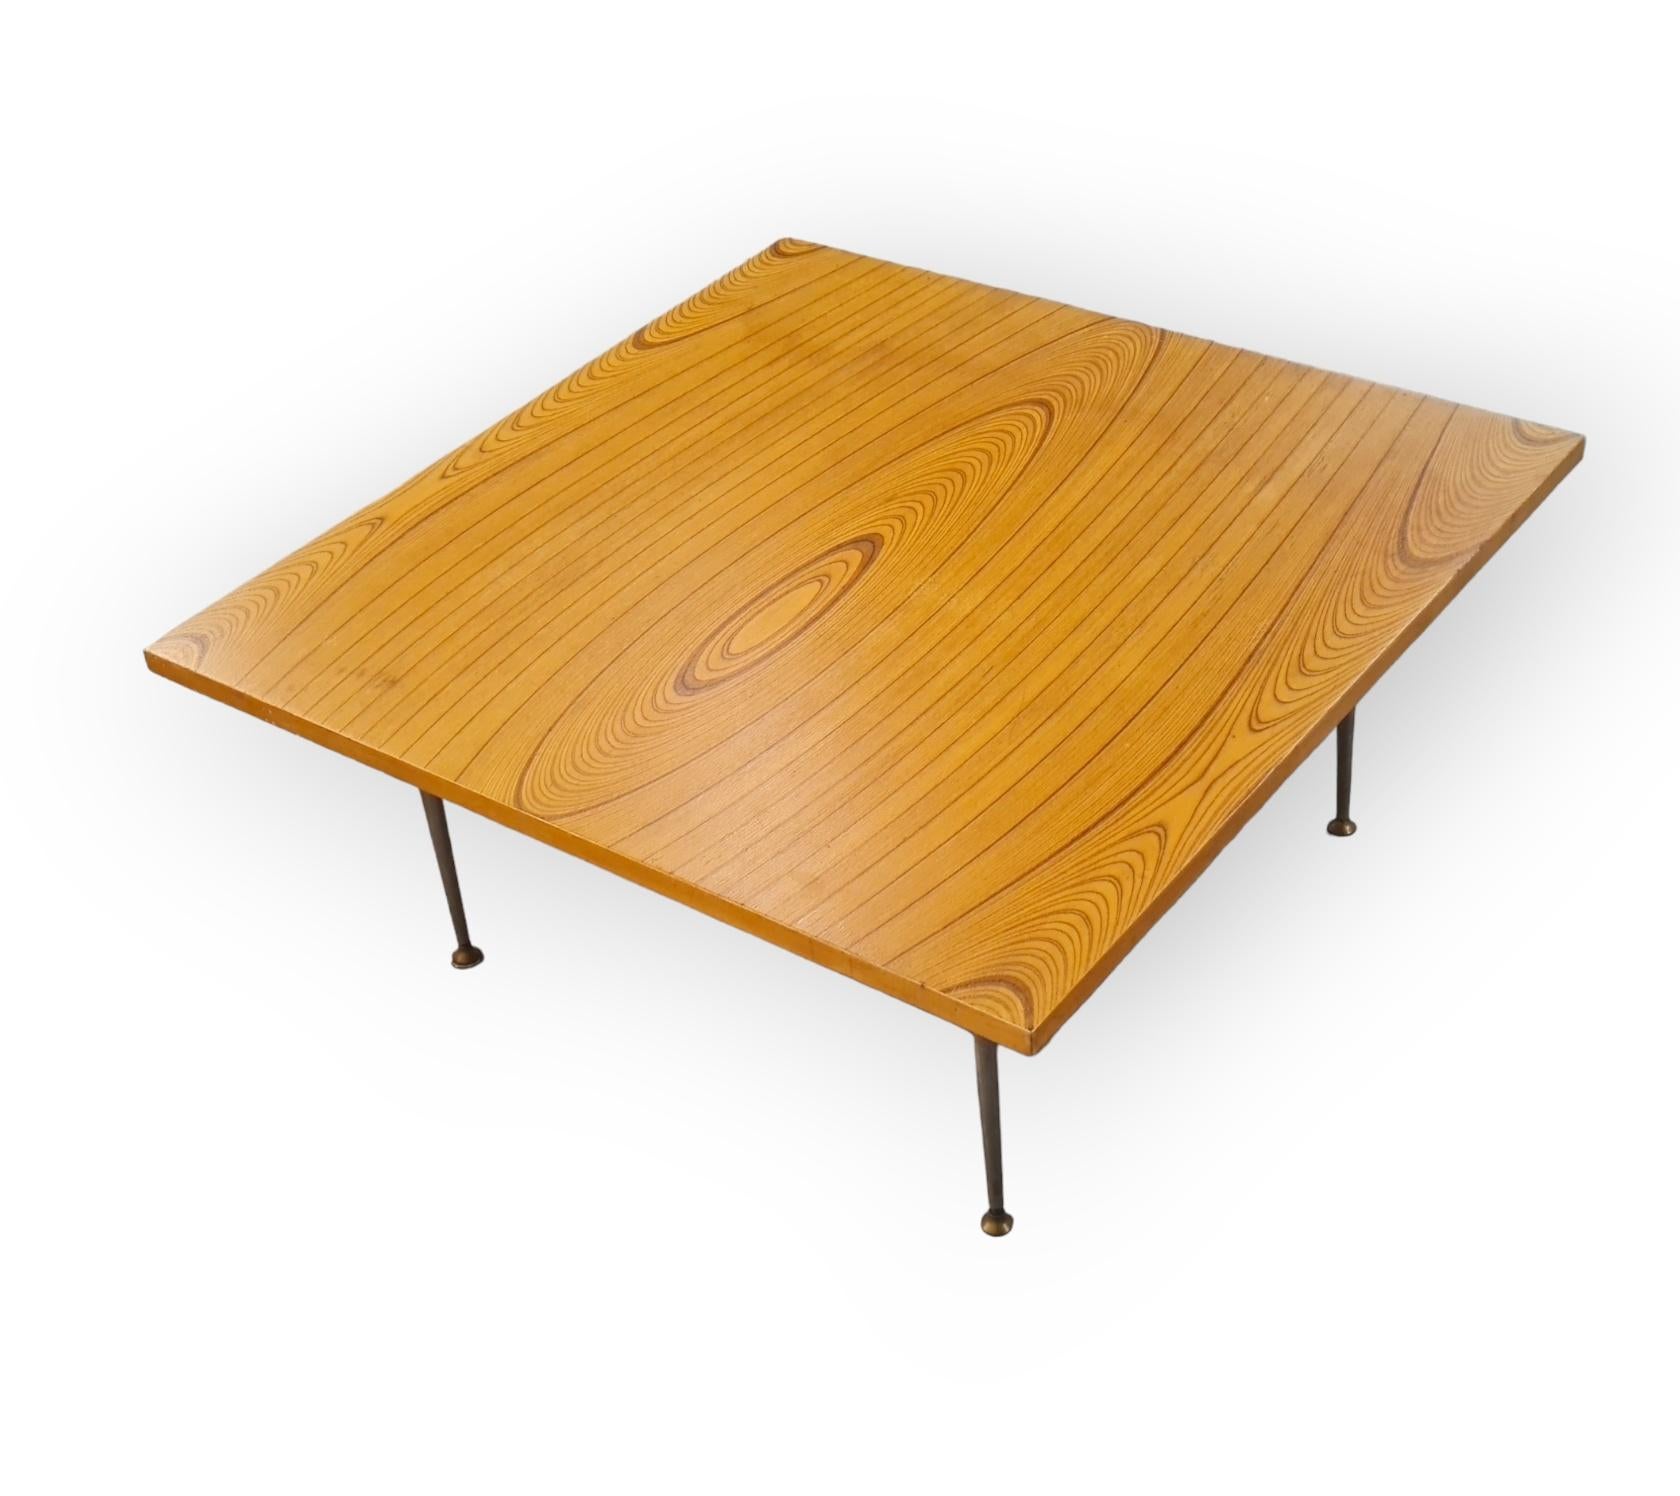 Une version rare de la table basse Tapio Wirkkala en placage rythmique, modèle 9018, avec les pieds en laiton nickelé d'origine.
Tapio Wirkkala a commencé à créer et à améliorer cette technique de placage rhytmique dans les années 1940 avec l'usine